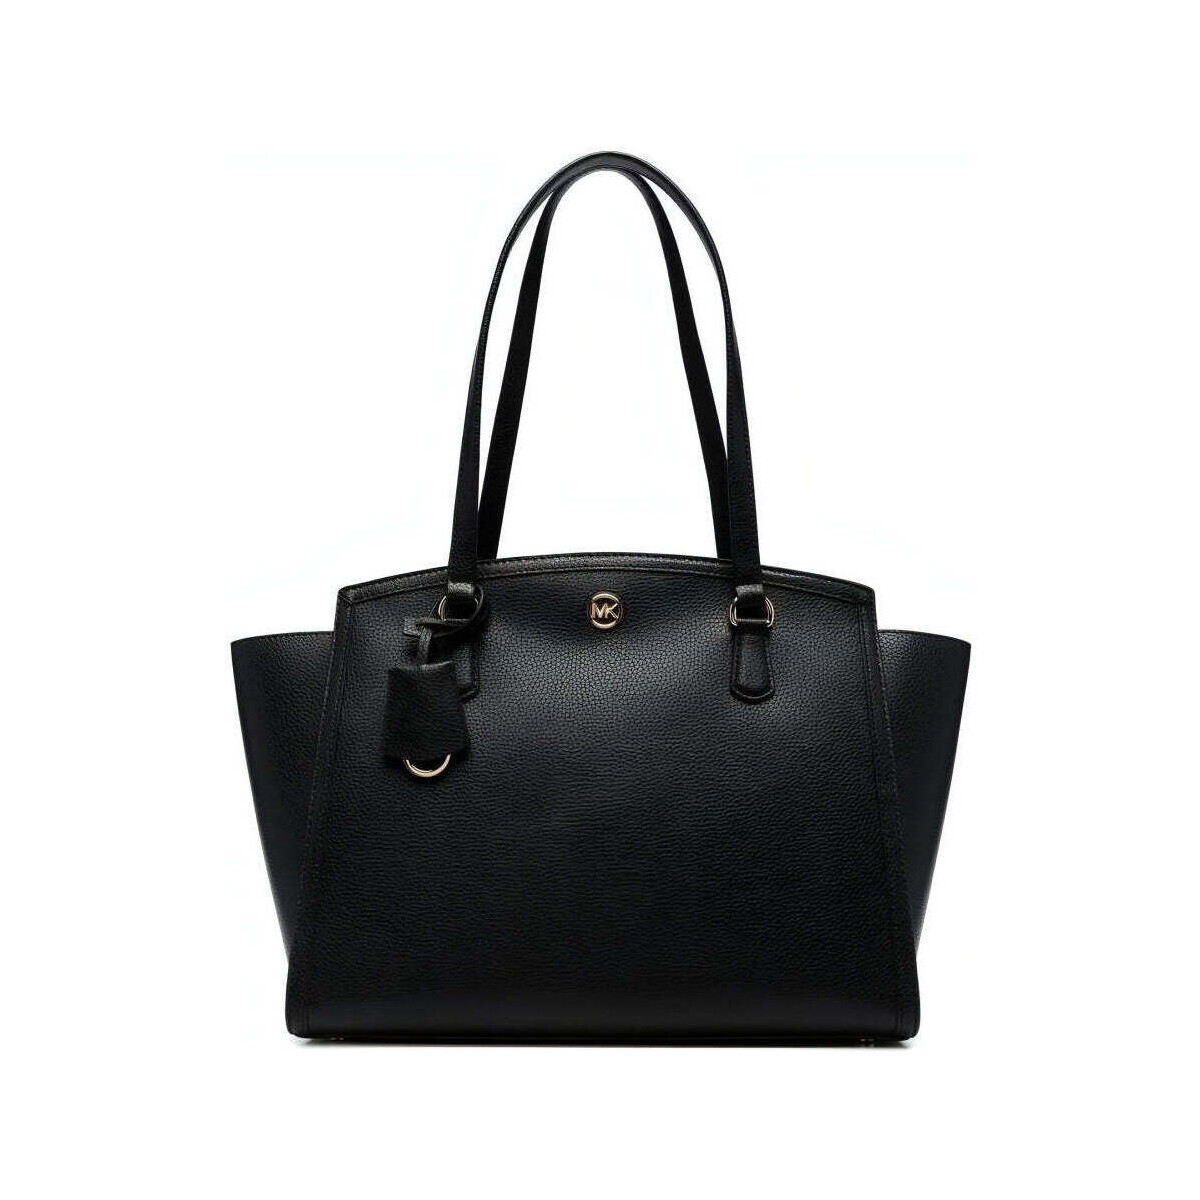 Táskák Női Bevásárló szatyrok / Bevásárló táskák MICHAEL Michael Kors  Fekete 